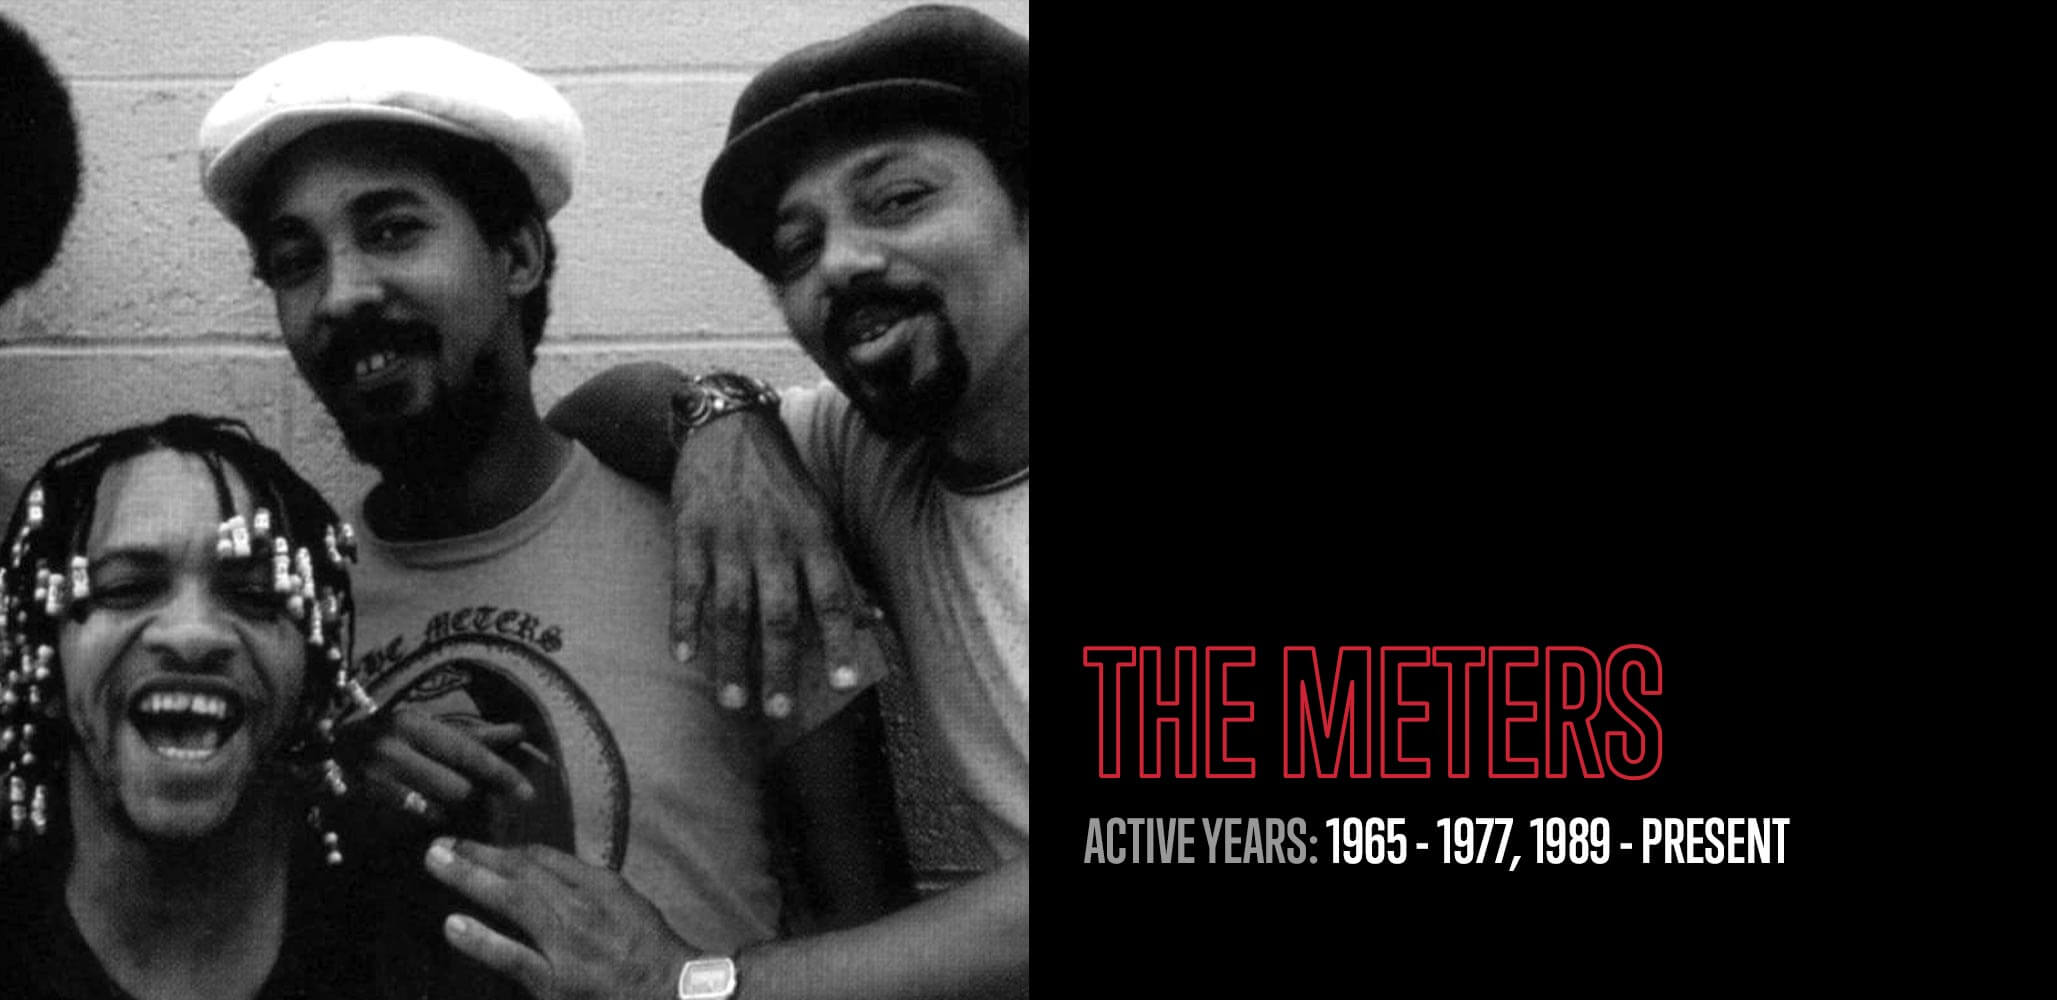 The Meters